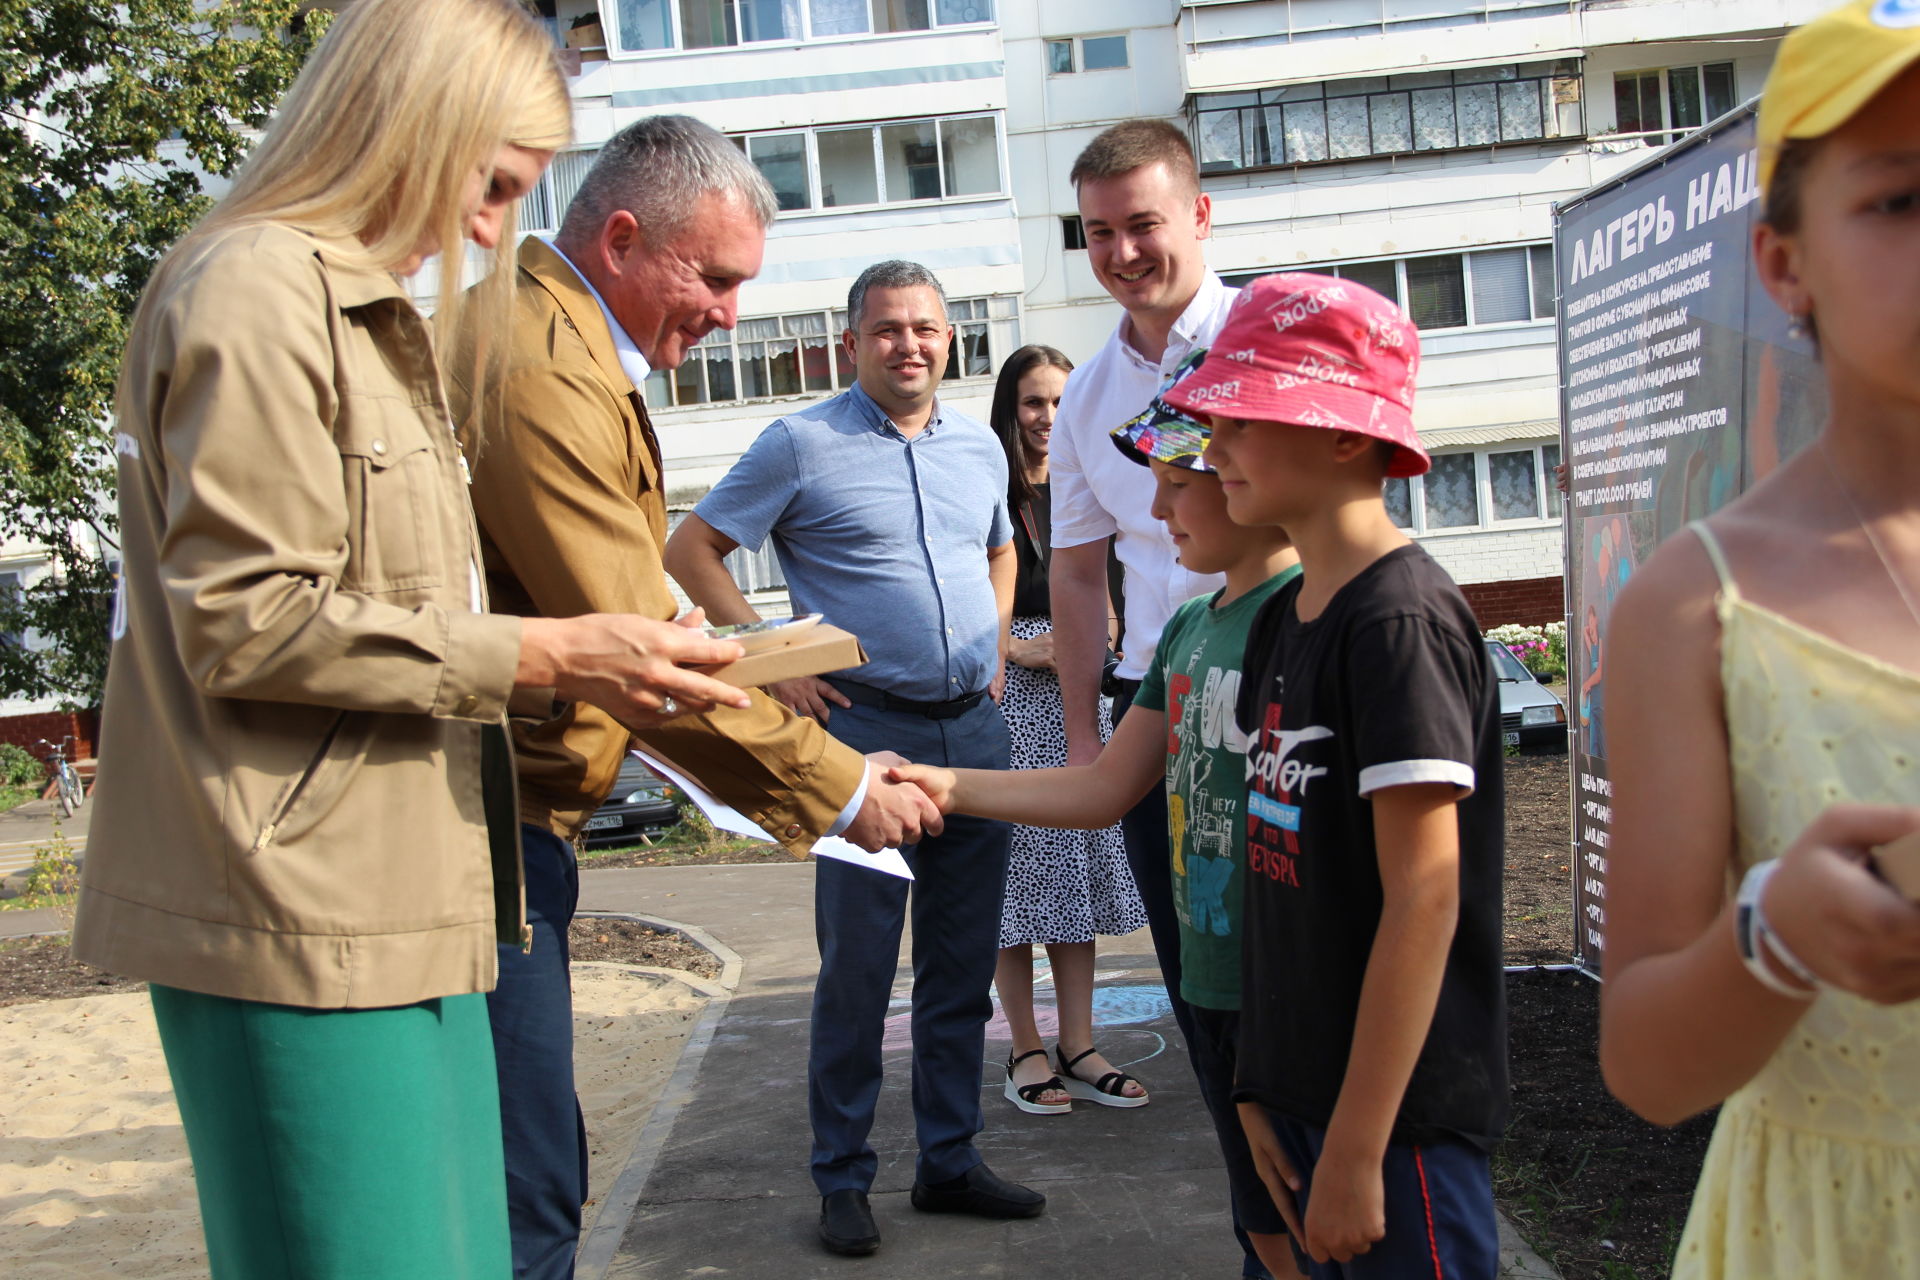 Депутат Госдумы РФ ознакомилась с реализацией проекта «Лагерь нашего двора» в Заинске